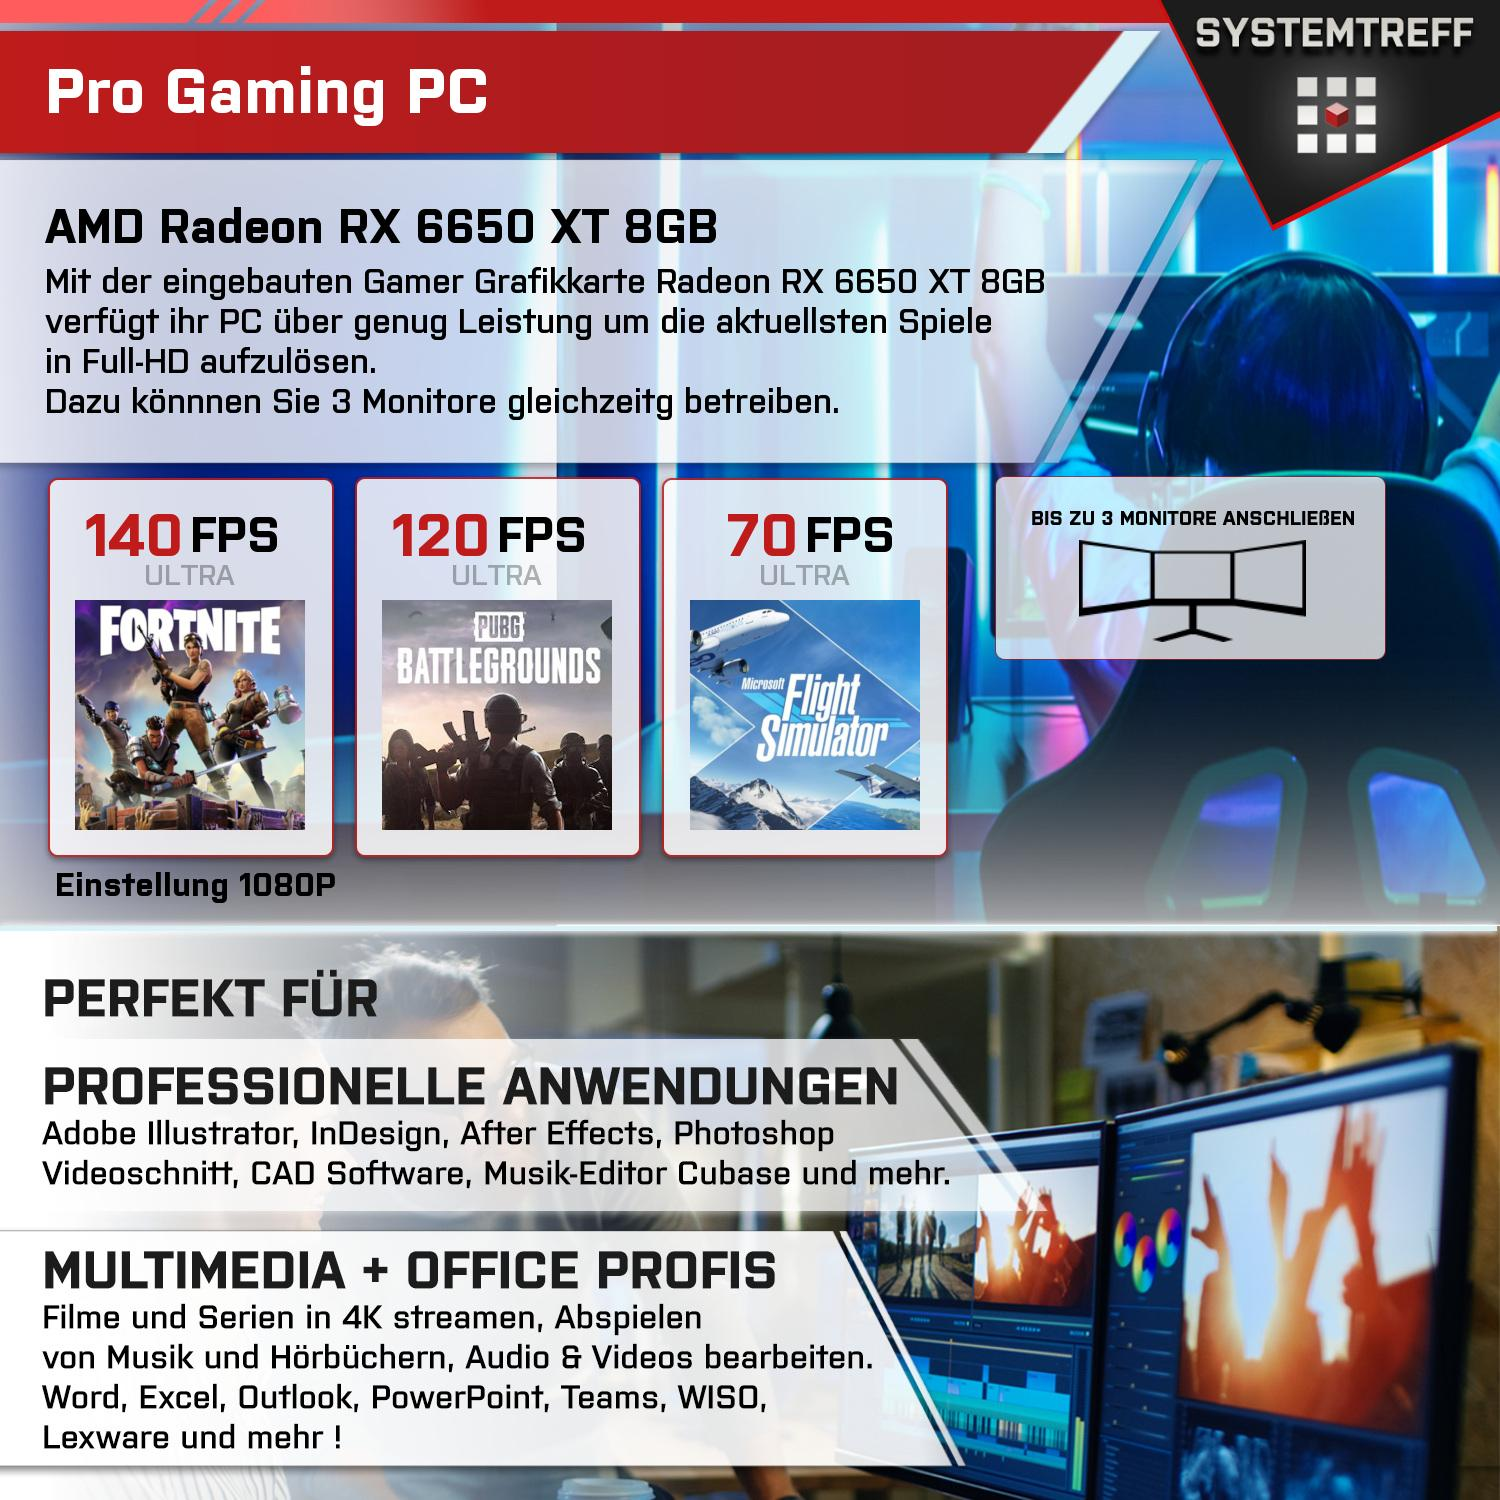 GB AMD 5 8 Komplett Prozessor, 7600 Ryzen Radeon Komplett GDDR6, 6650 Gaming mit mSSD, GB 7600, PC SYSTEMTREFF RX 8GB 32 512 XT AMD RAM, GB